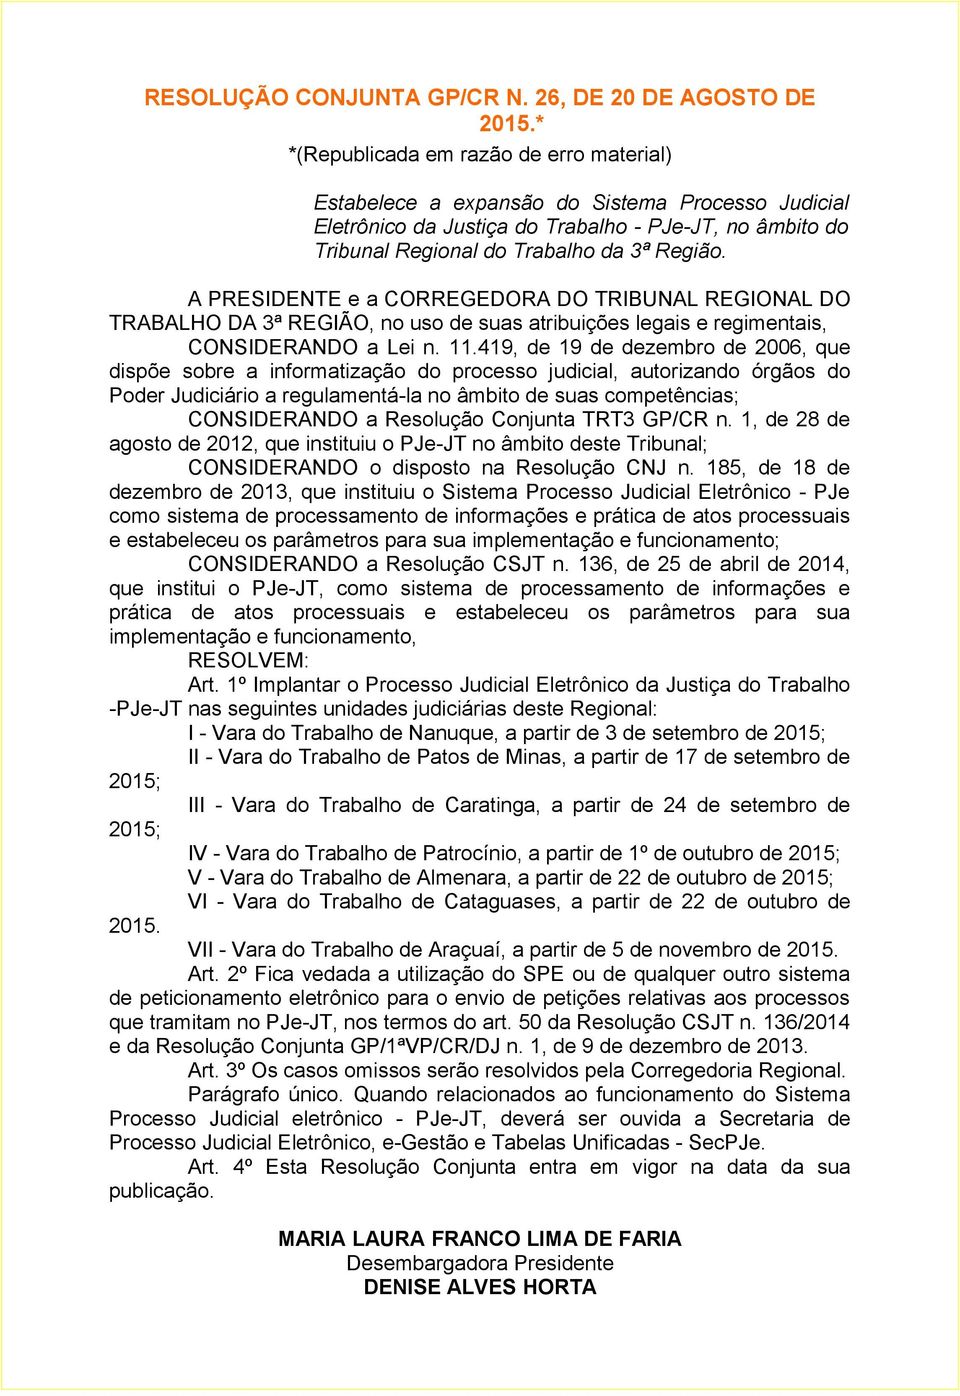 A PRESIDENTE e a CORREGEDORA DO TRIBUNAL REGIONAL DO TRABALHO DA 3ª REGIÃO, no uso de suas atribuições legais e regimentais, CONSIDERANDO a Lei n. 11.